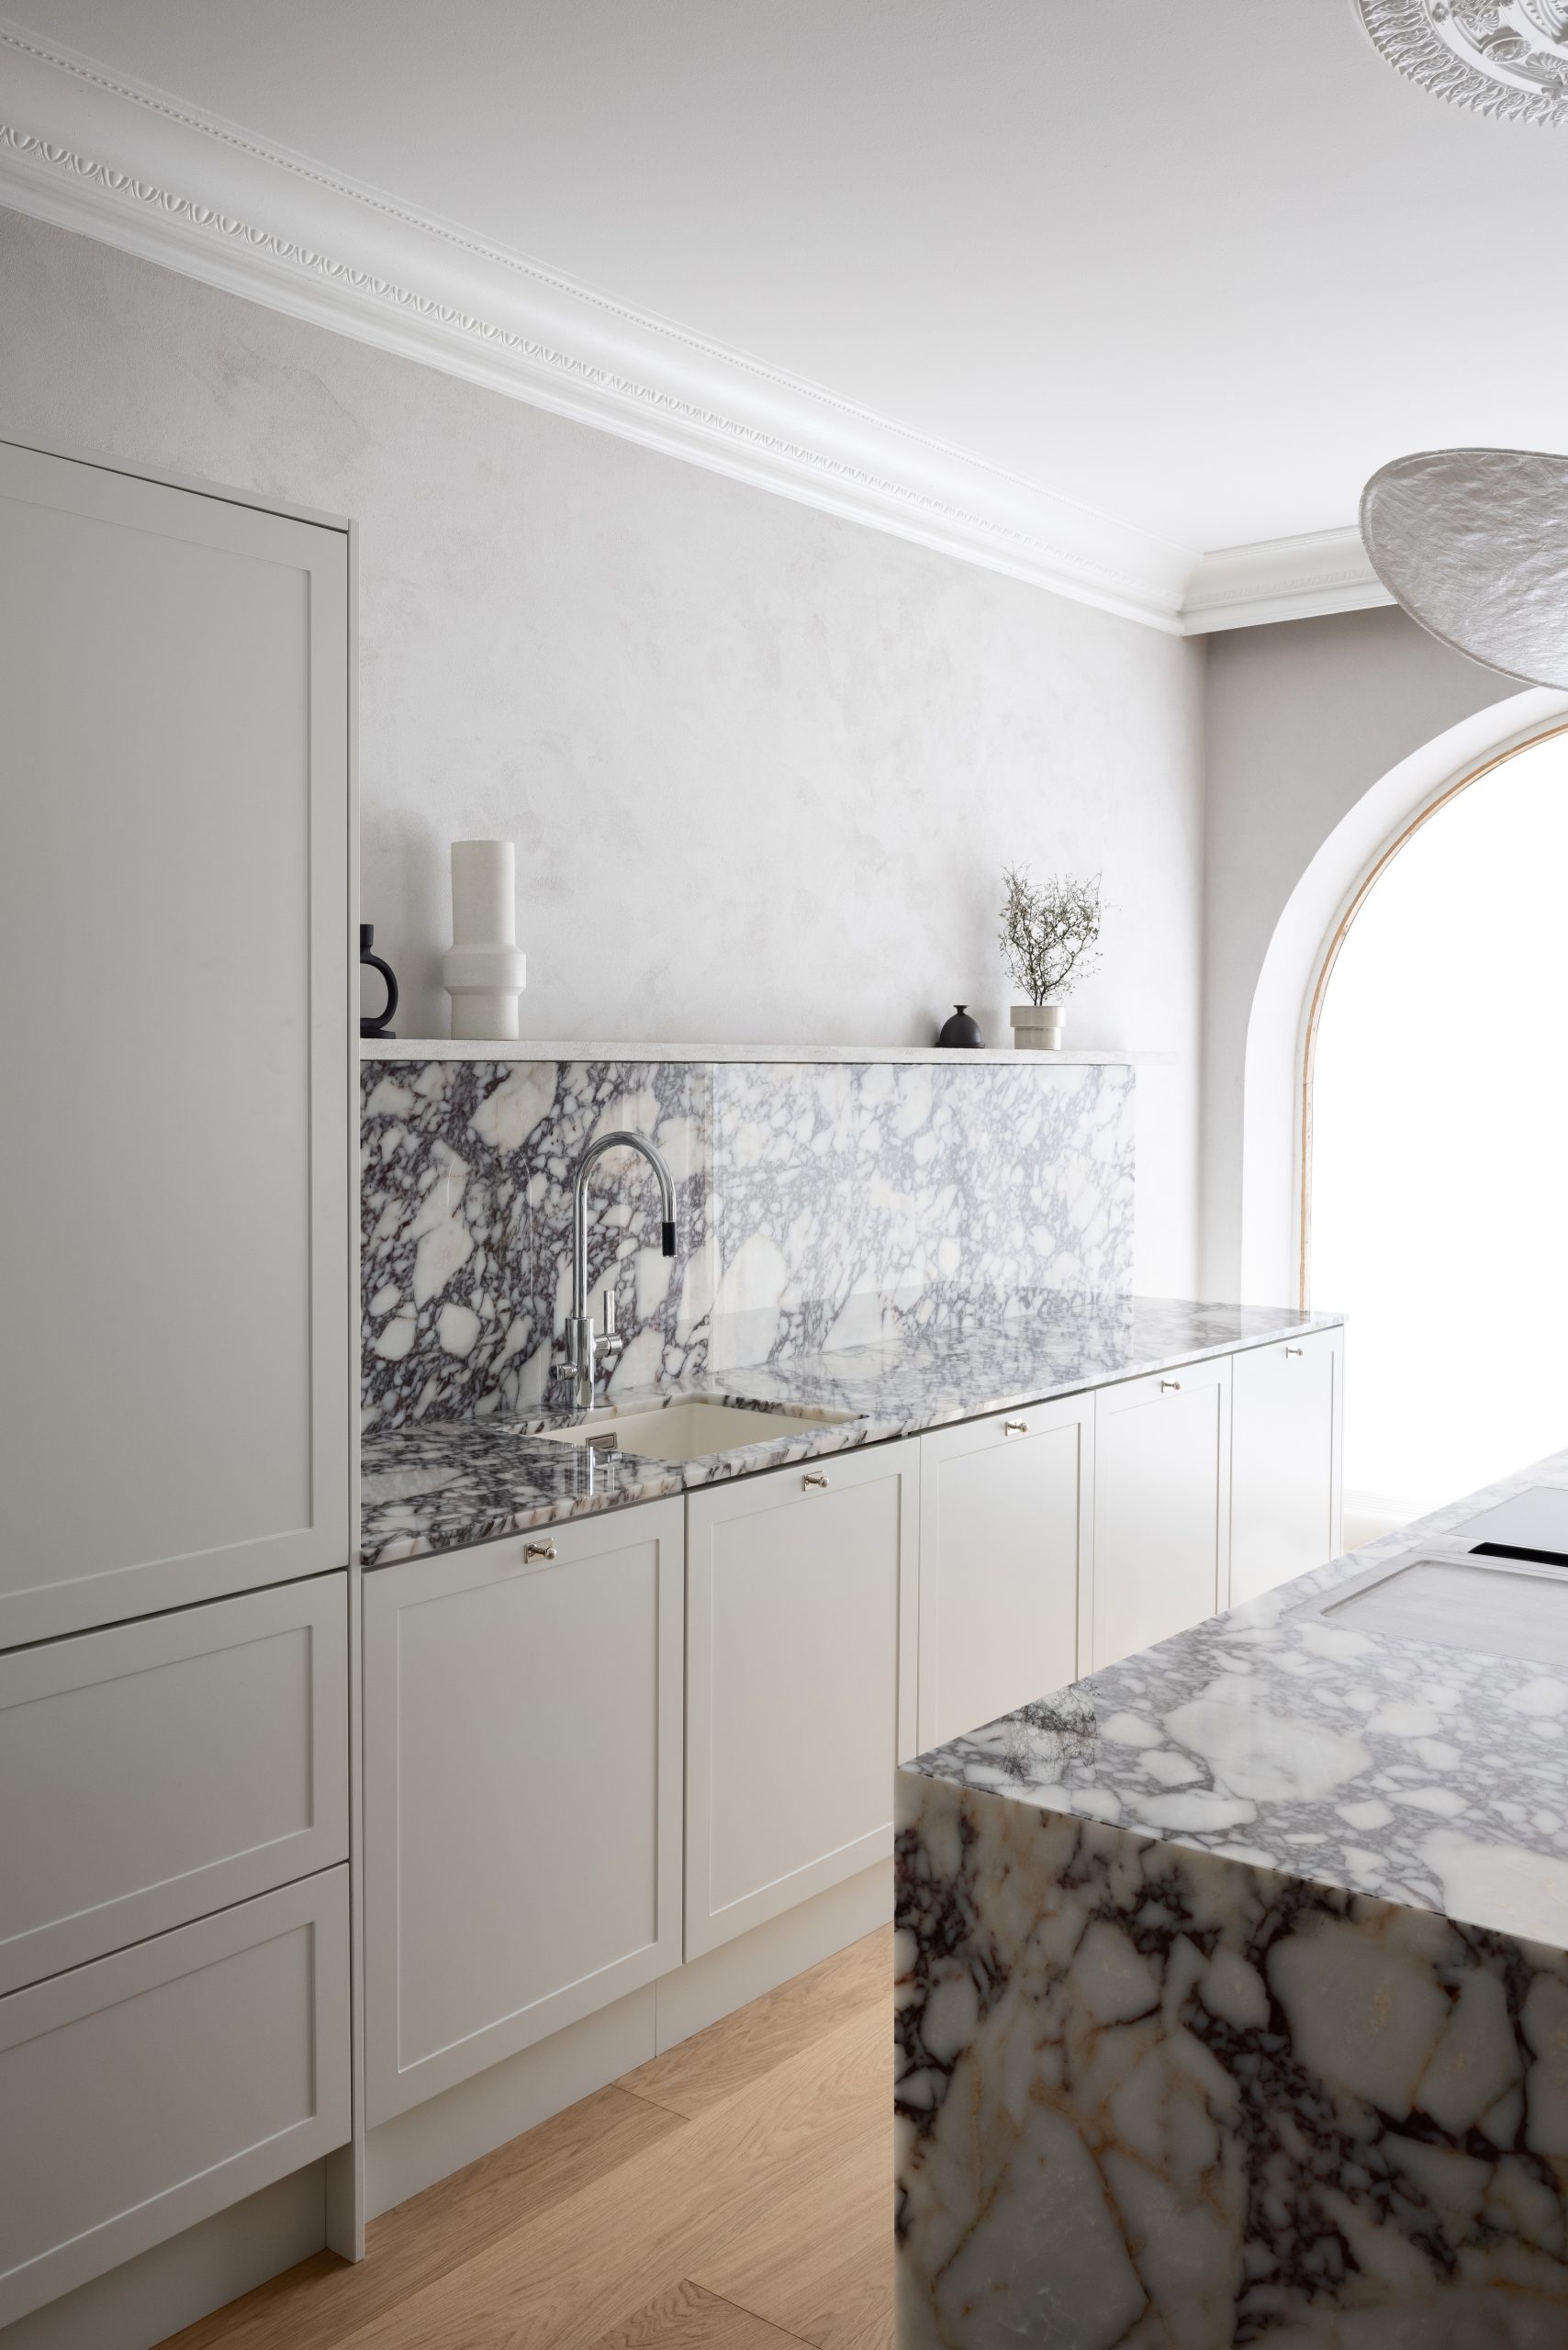 Blaun Helsingin Töölössä sijaitsevan keittiömyymälän esittely keittiö Calacatta Viola marmorilla.